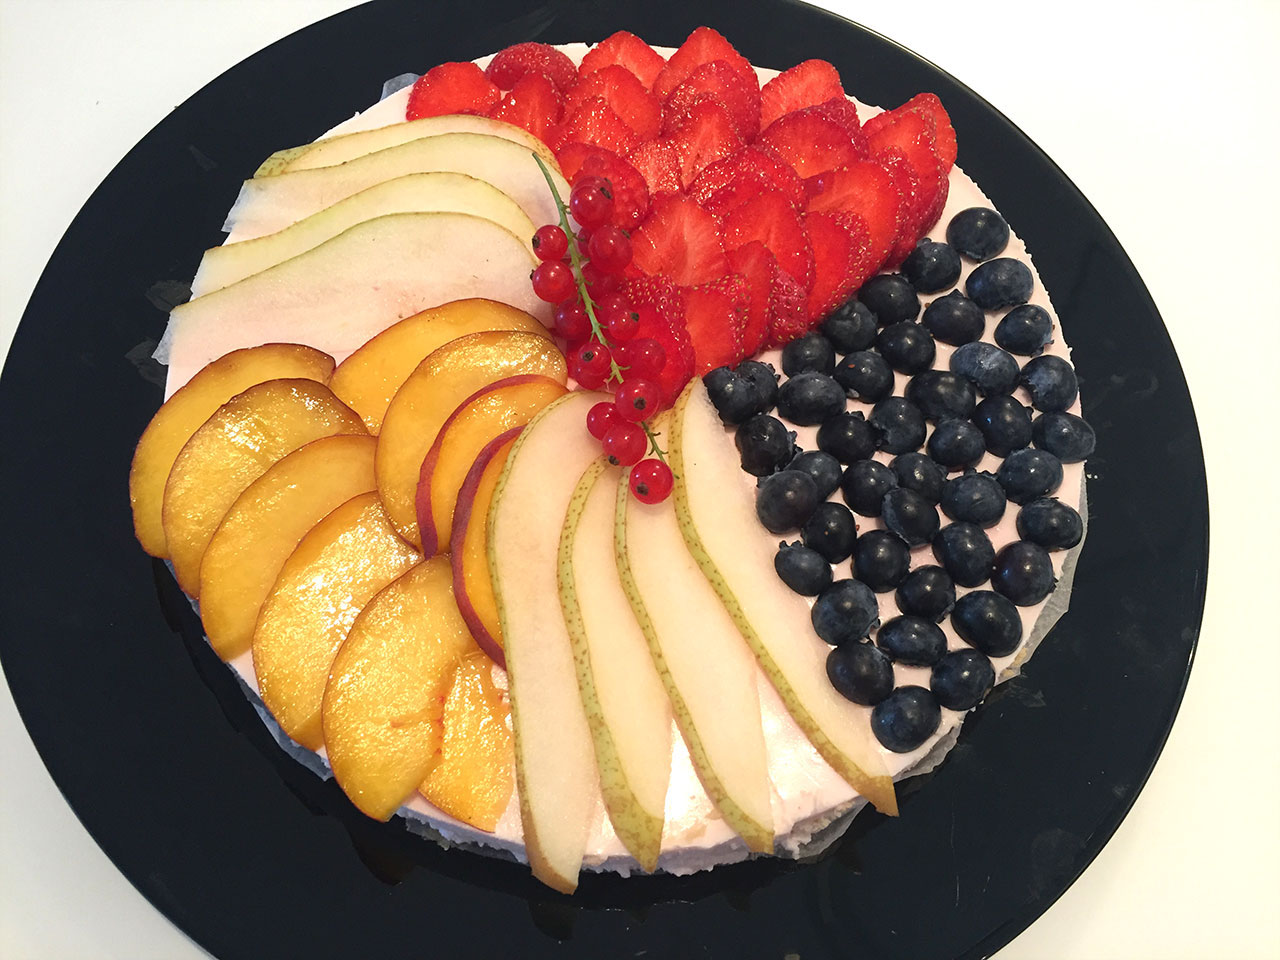 Joghurt-Torte mit frischen Früchten - Food Blog Kochphilosophen